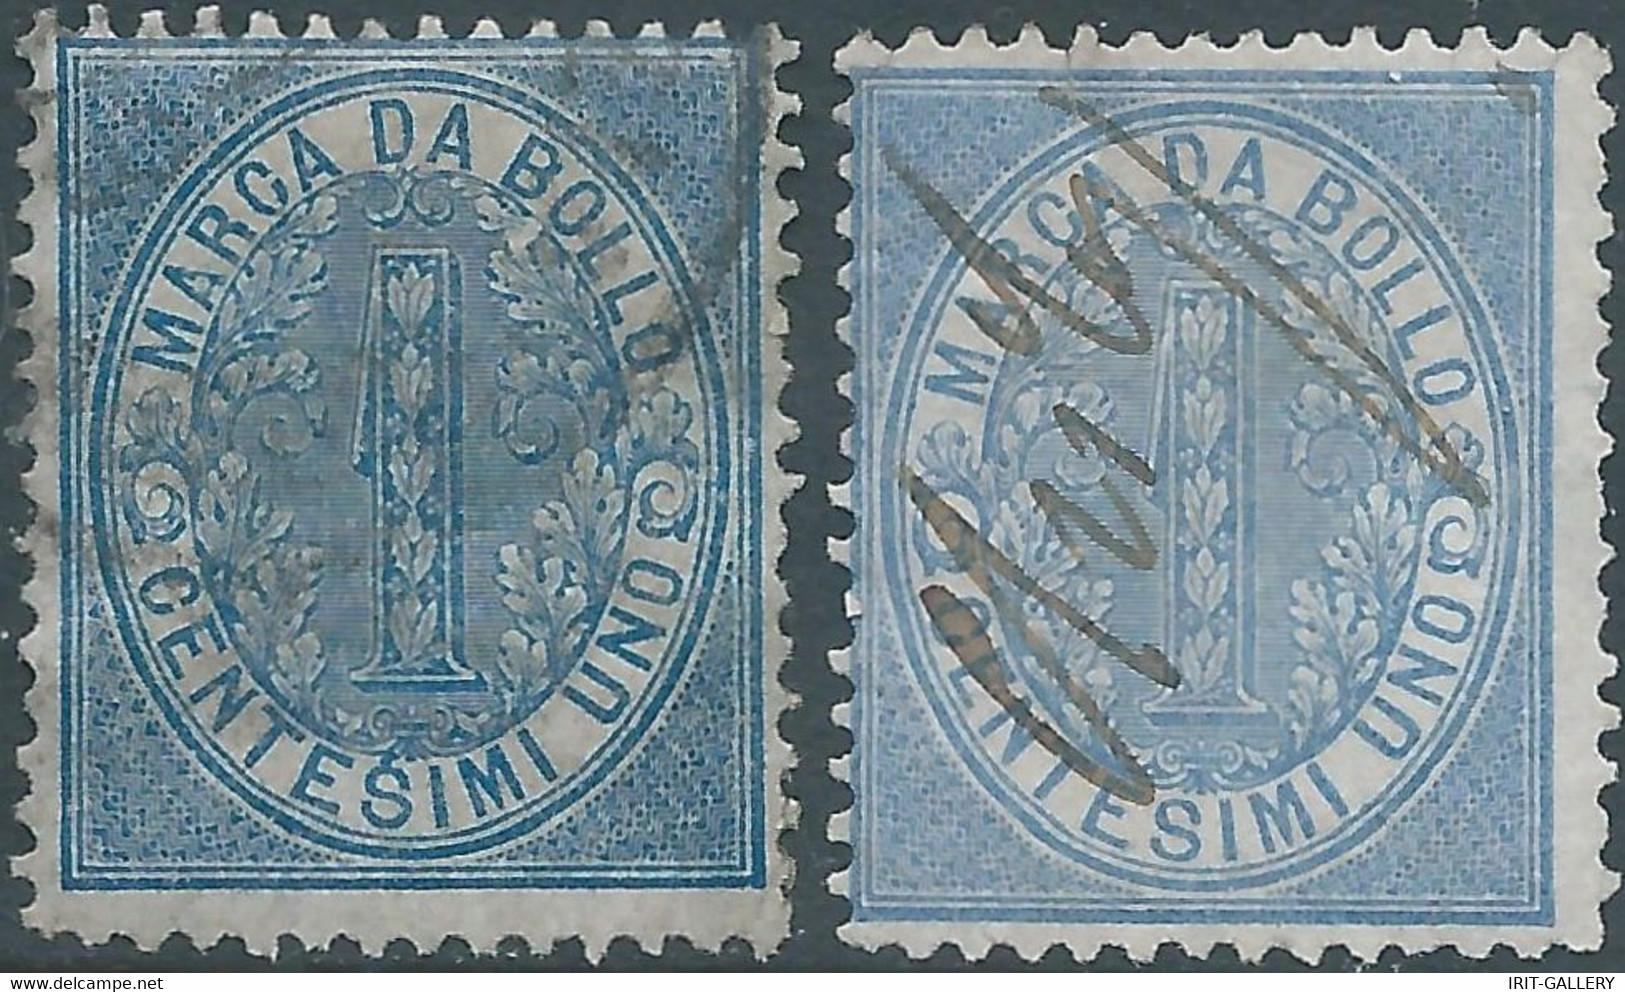 ITALIA-ITALY-ITALIEN,1868 Marca Da Bollo,Revenue Fiscal -Tax 2X 1Cent,Used - Revenue Stamps